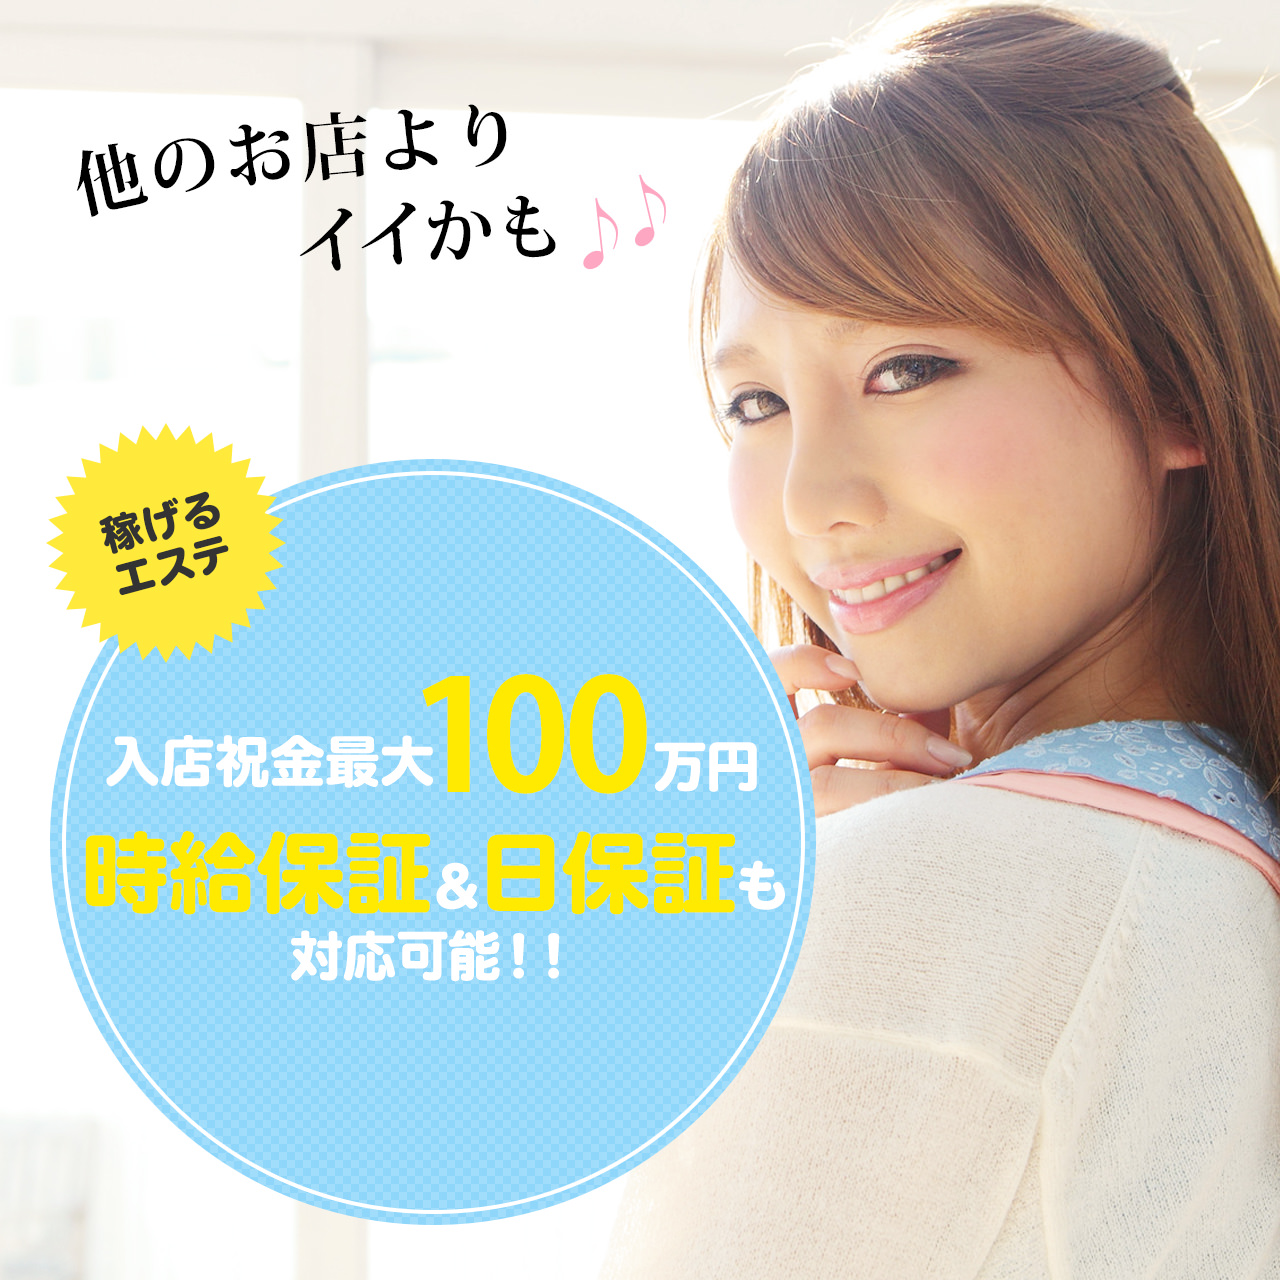 入店祝い金最大100万円、時給保証&日保証も対応可能!